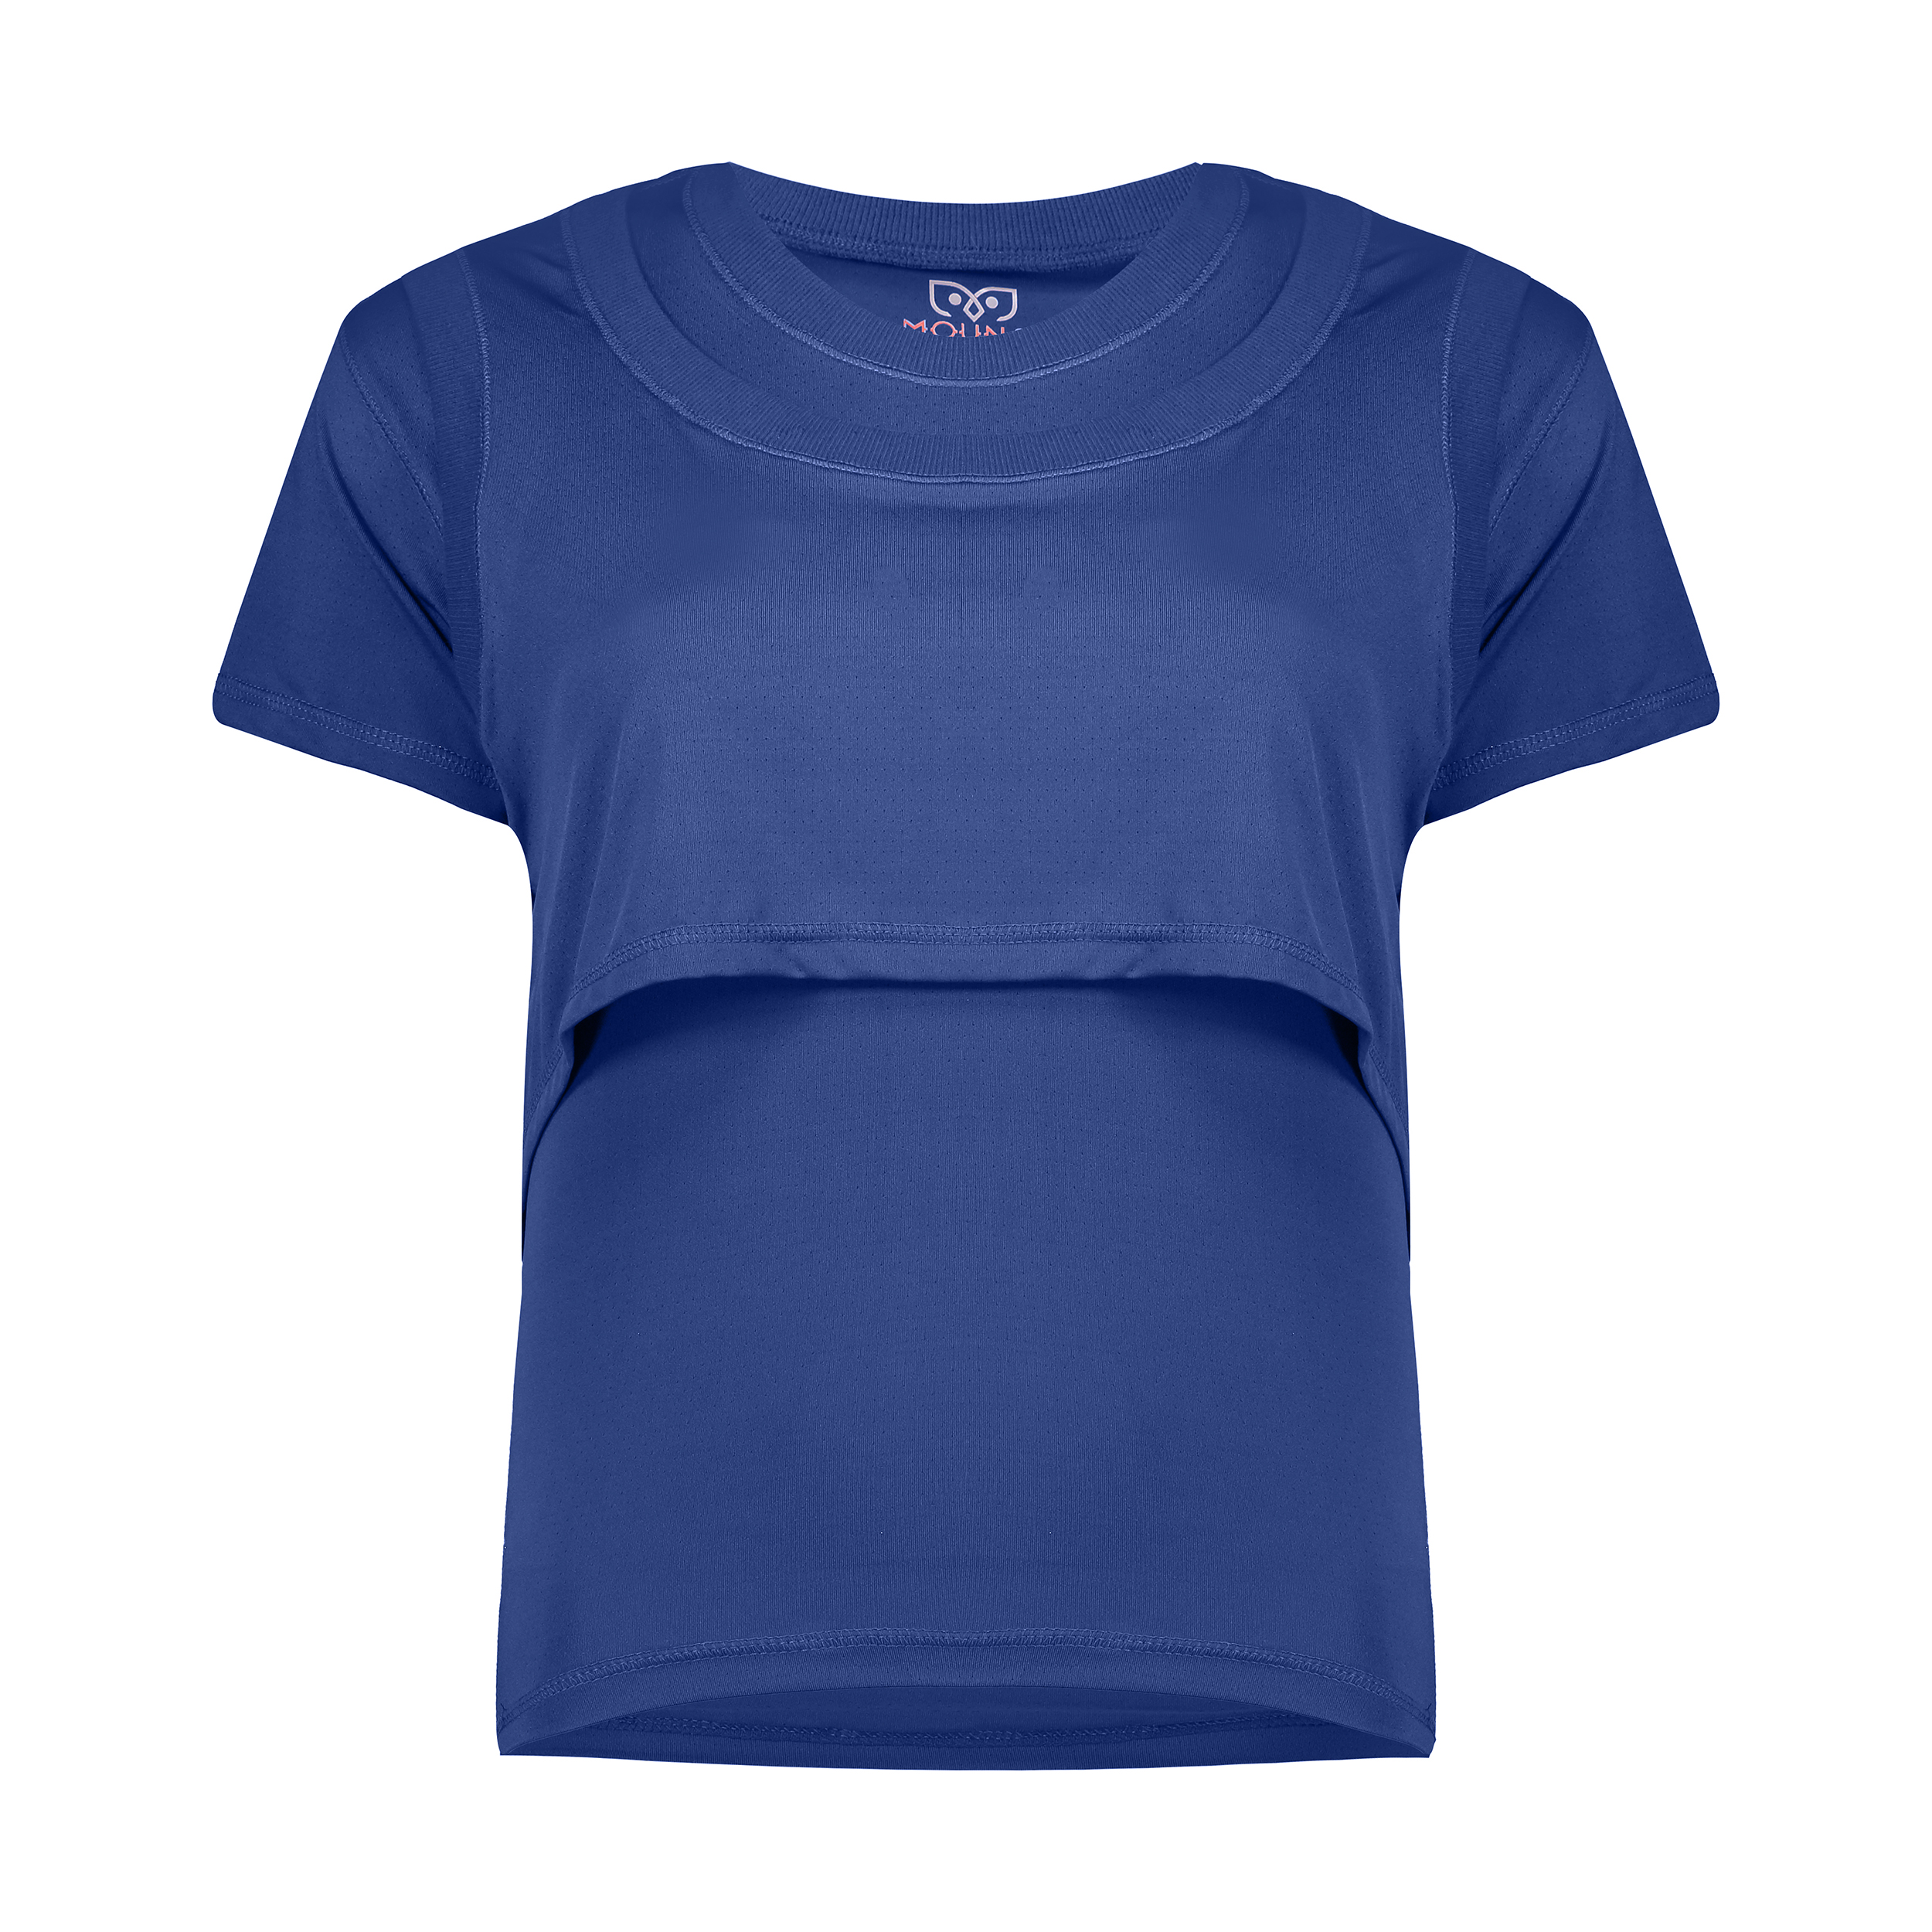 تی شرت ورزشی زنانه مون مدل 1631351-59